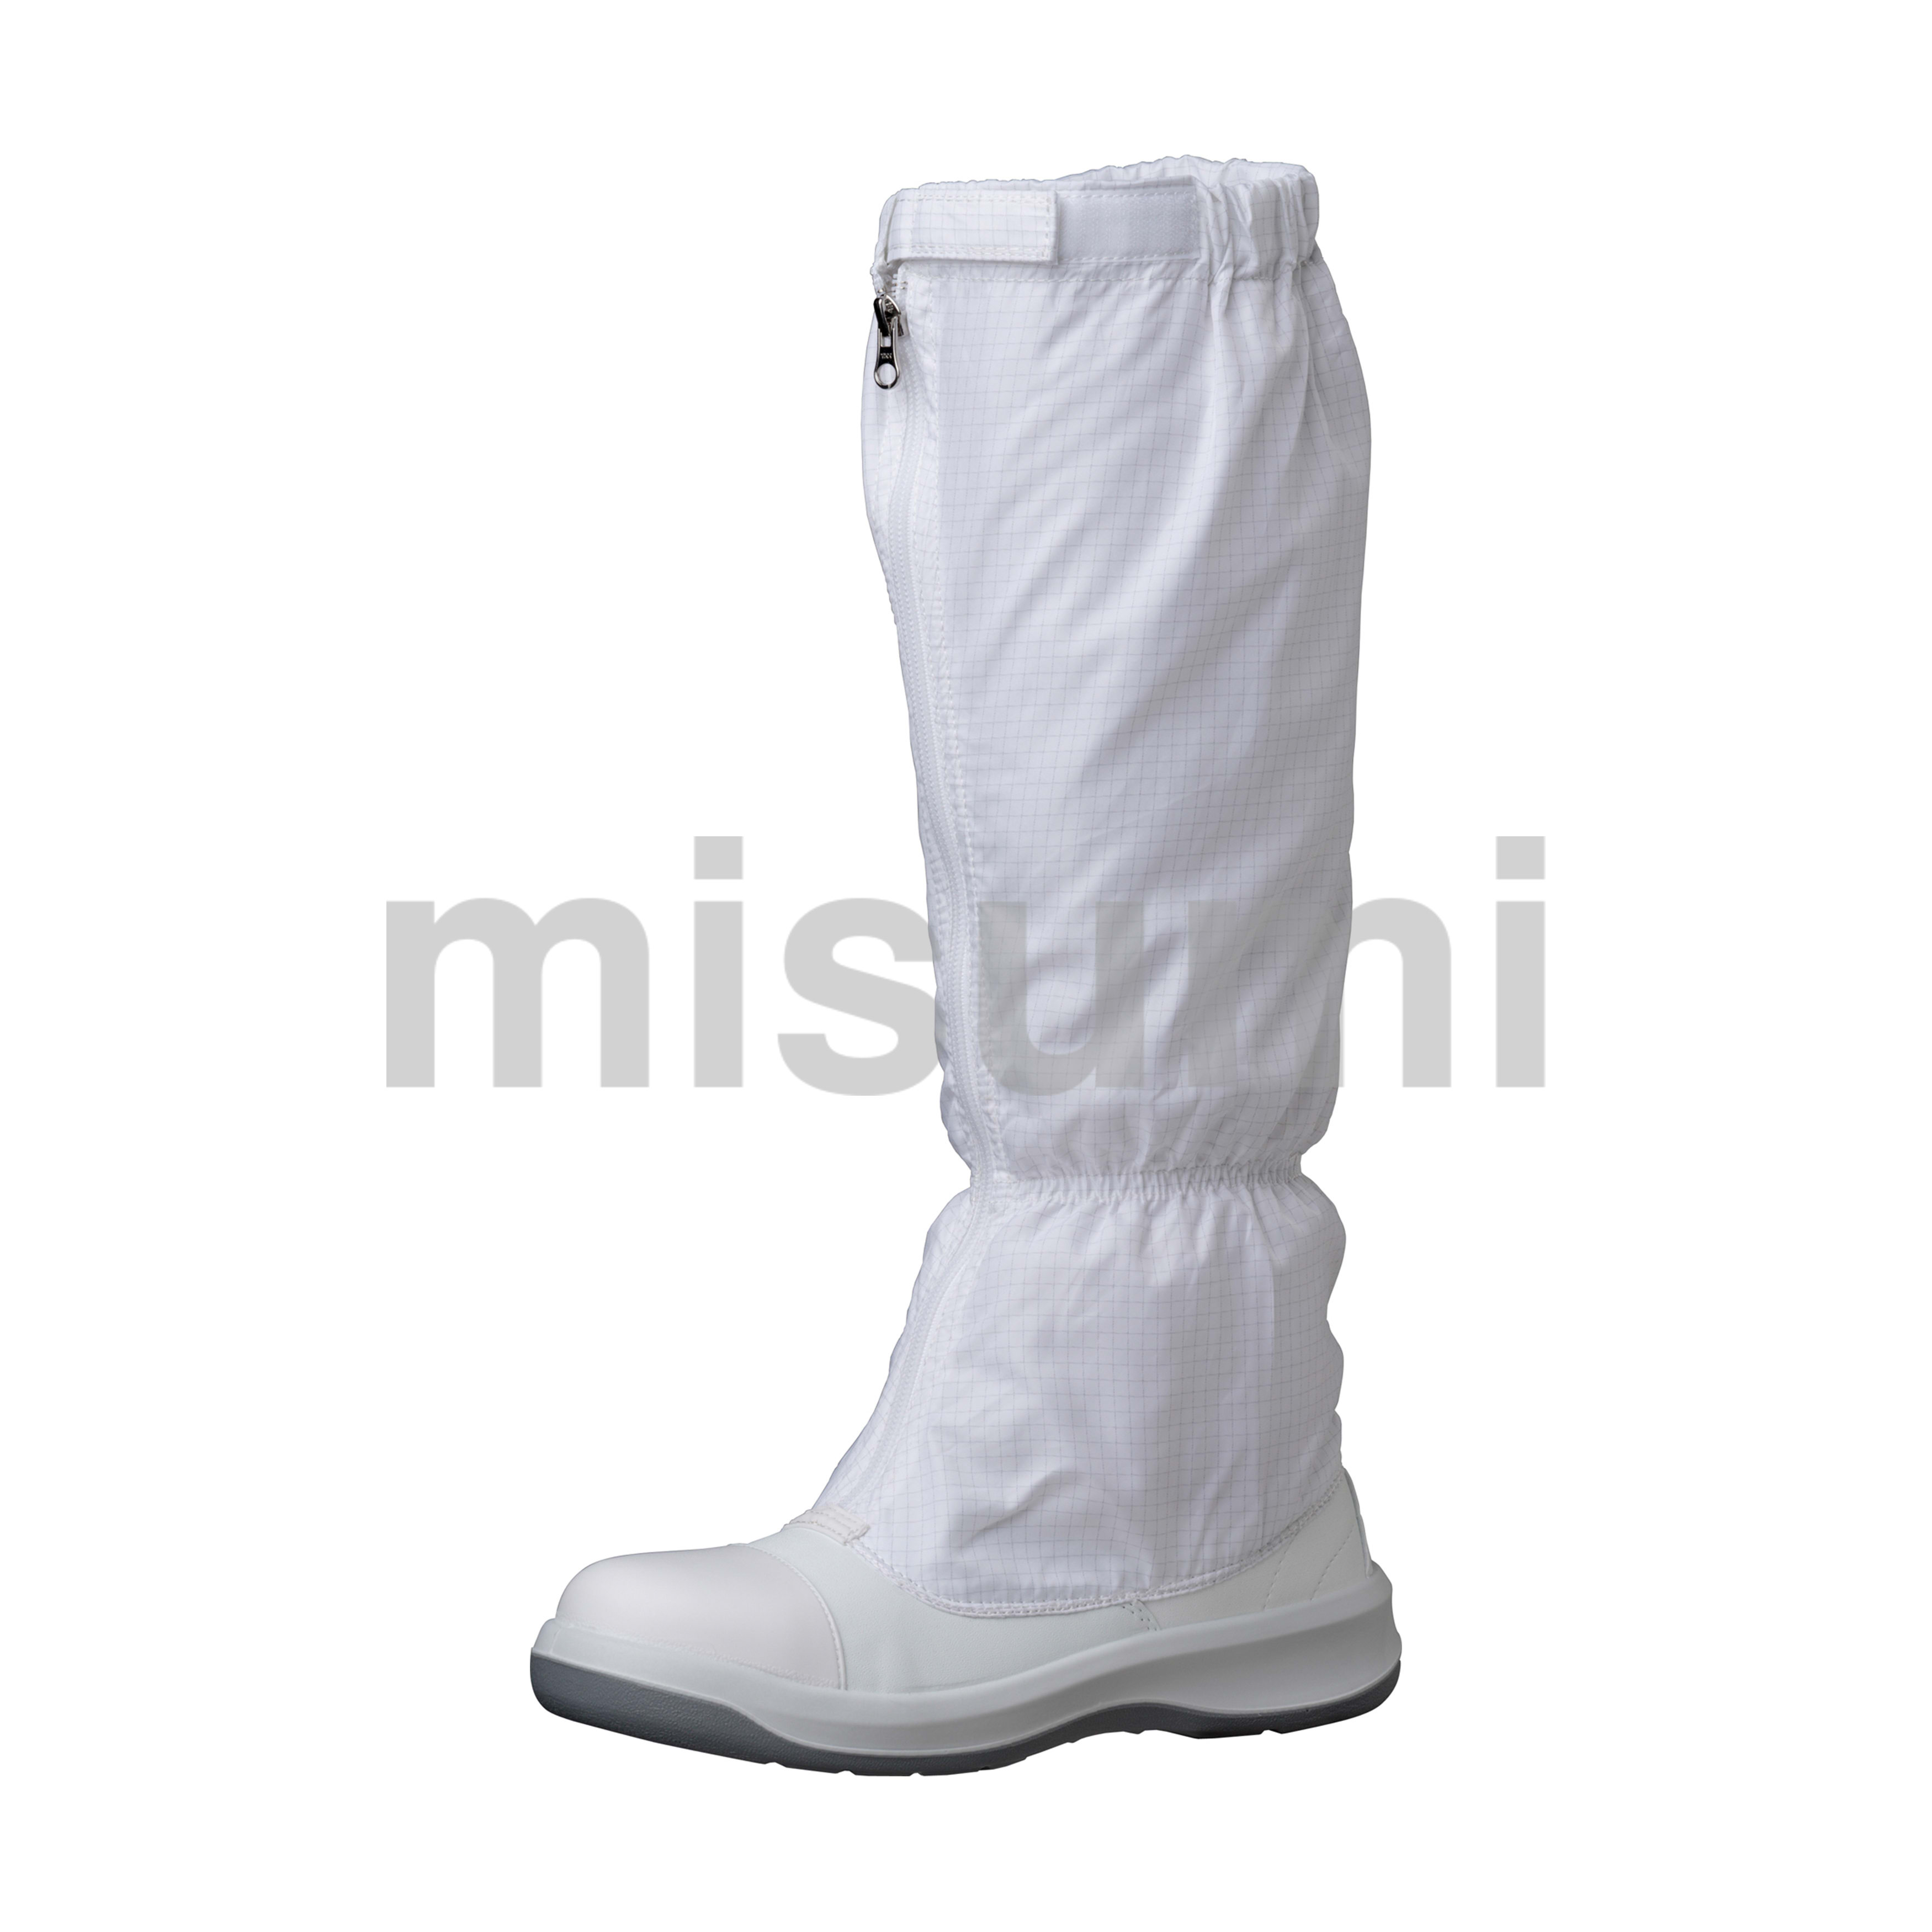 ミドリ安全 クリーン 静電安全靴 GCR1200 フルCAP フード ホワイト ミドリ安全 MISUMI(ミスミ)